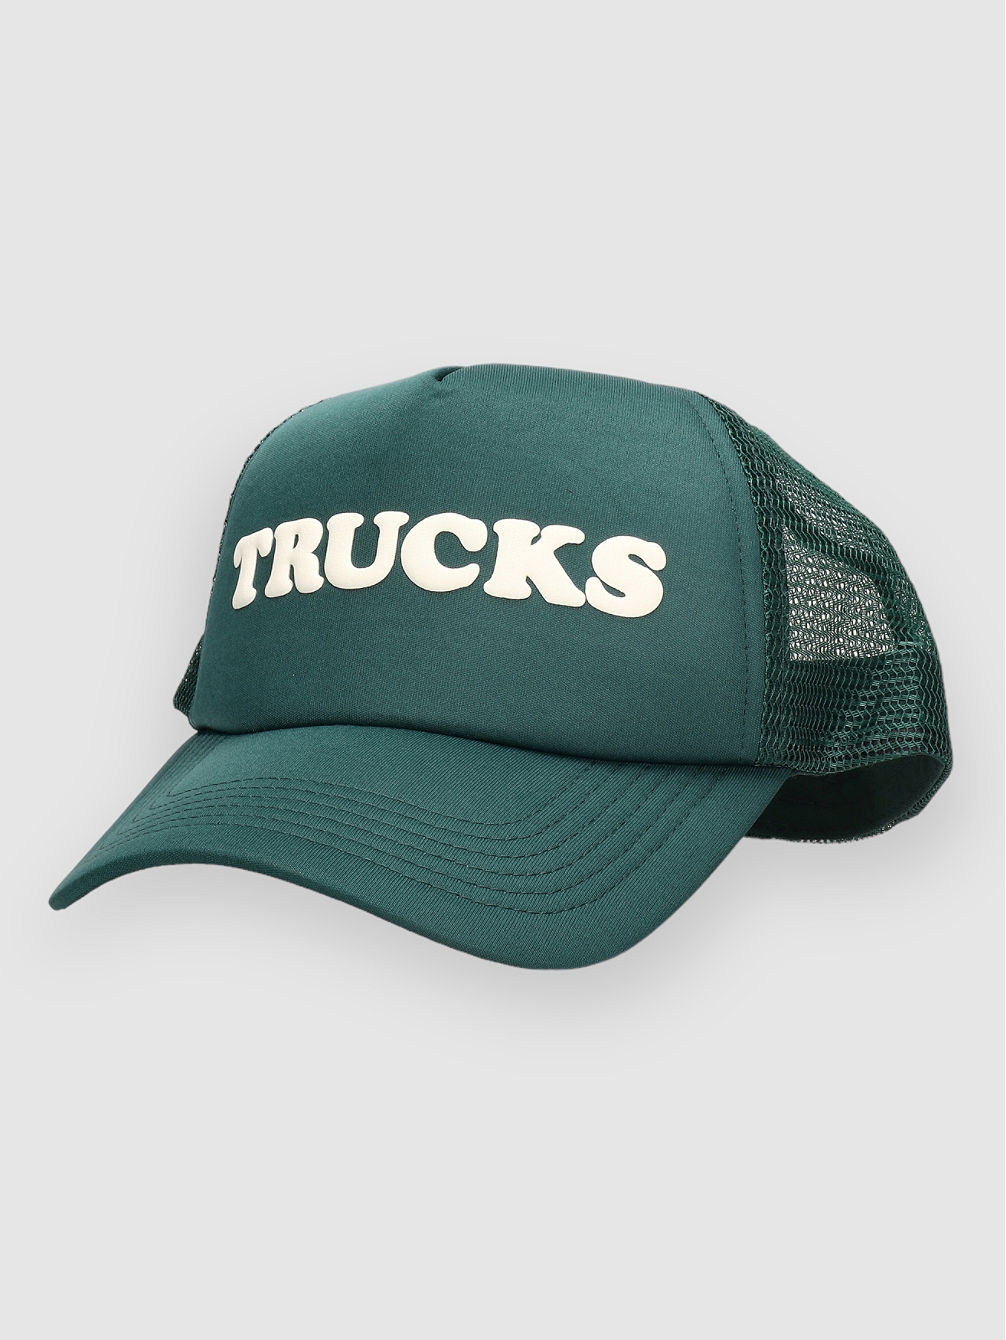 Trucks Trucker Cappellino